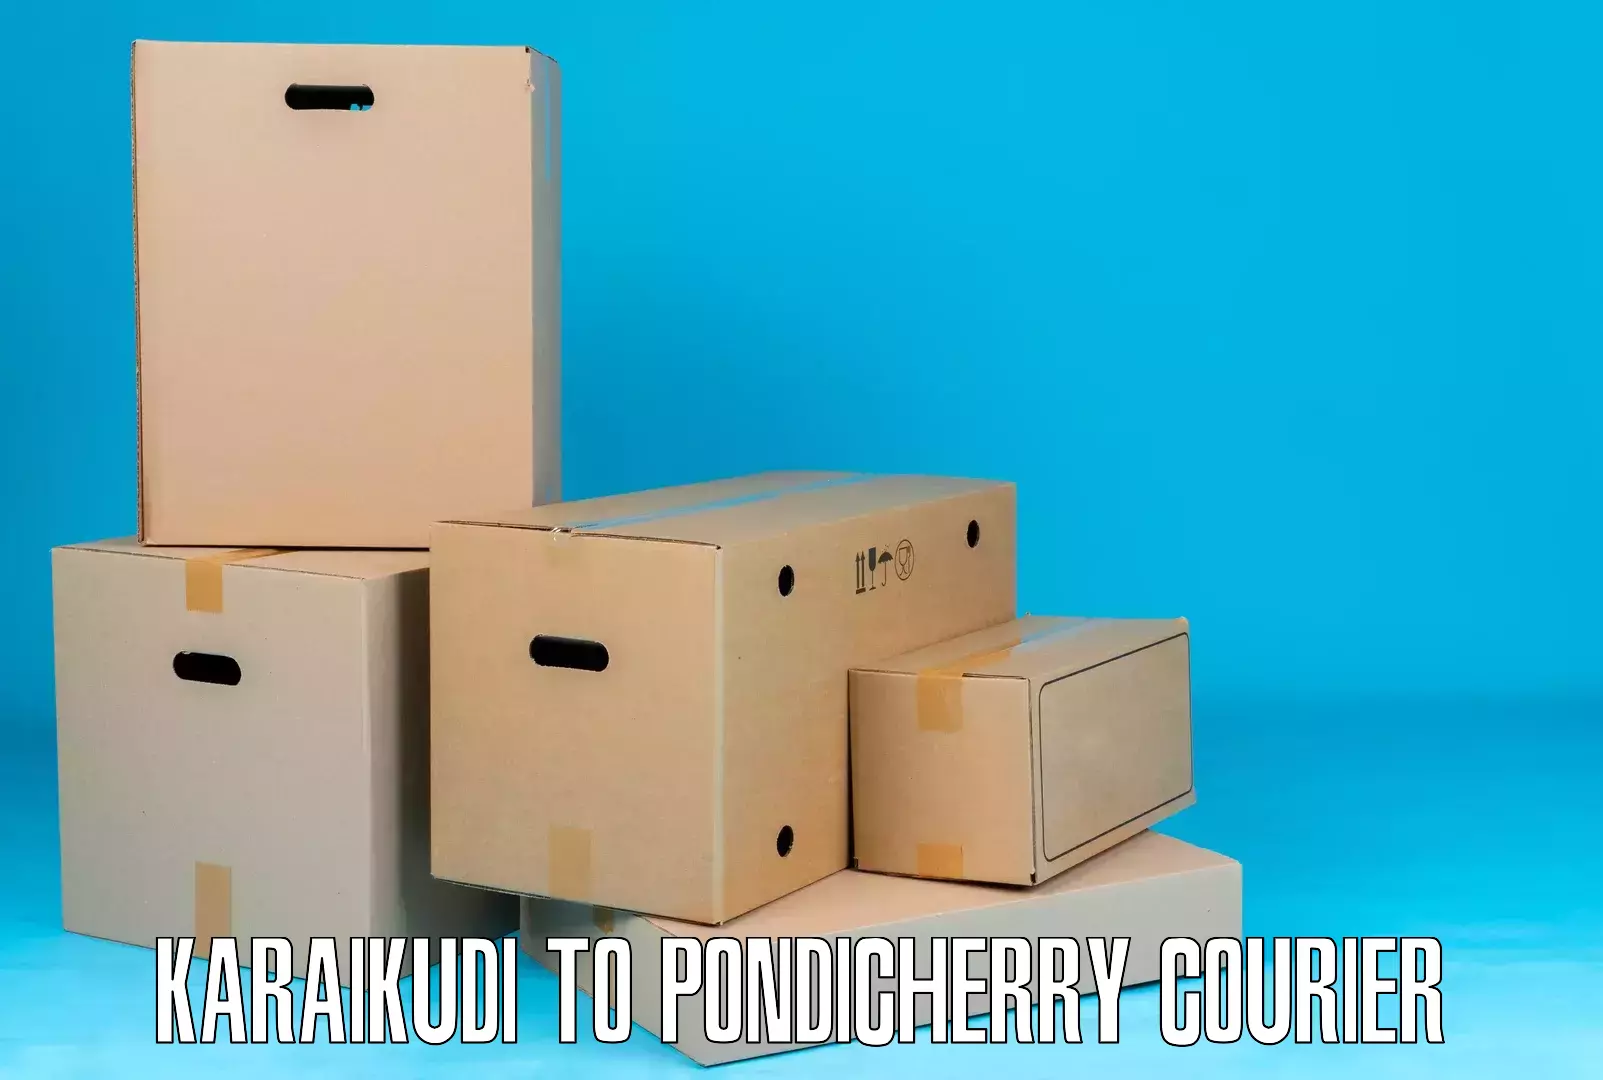 On-call courier service Karaikudi to Pondicherry